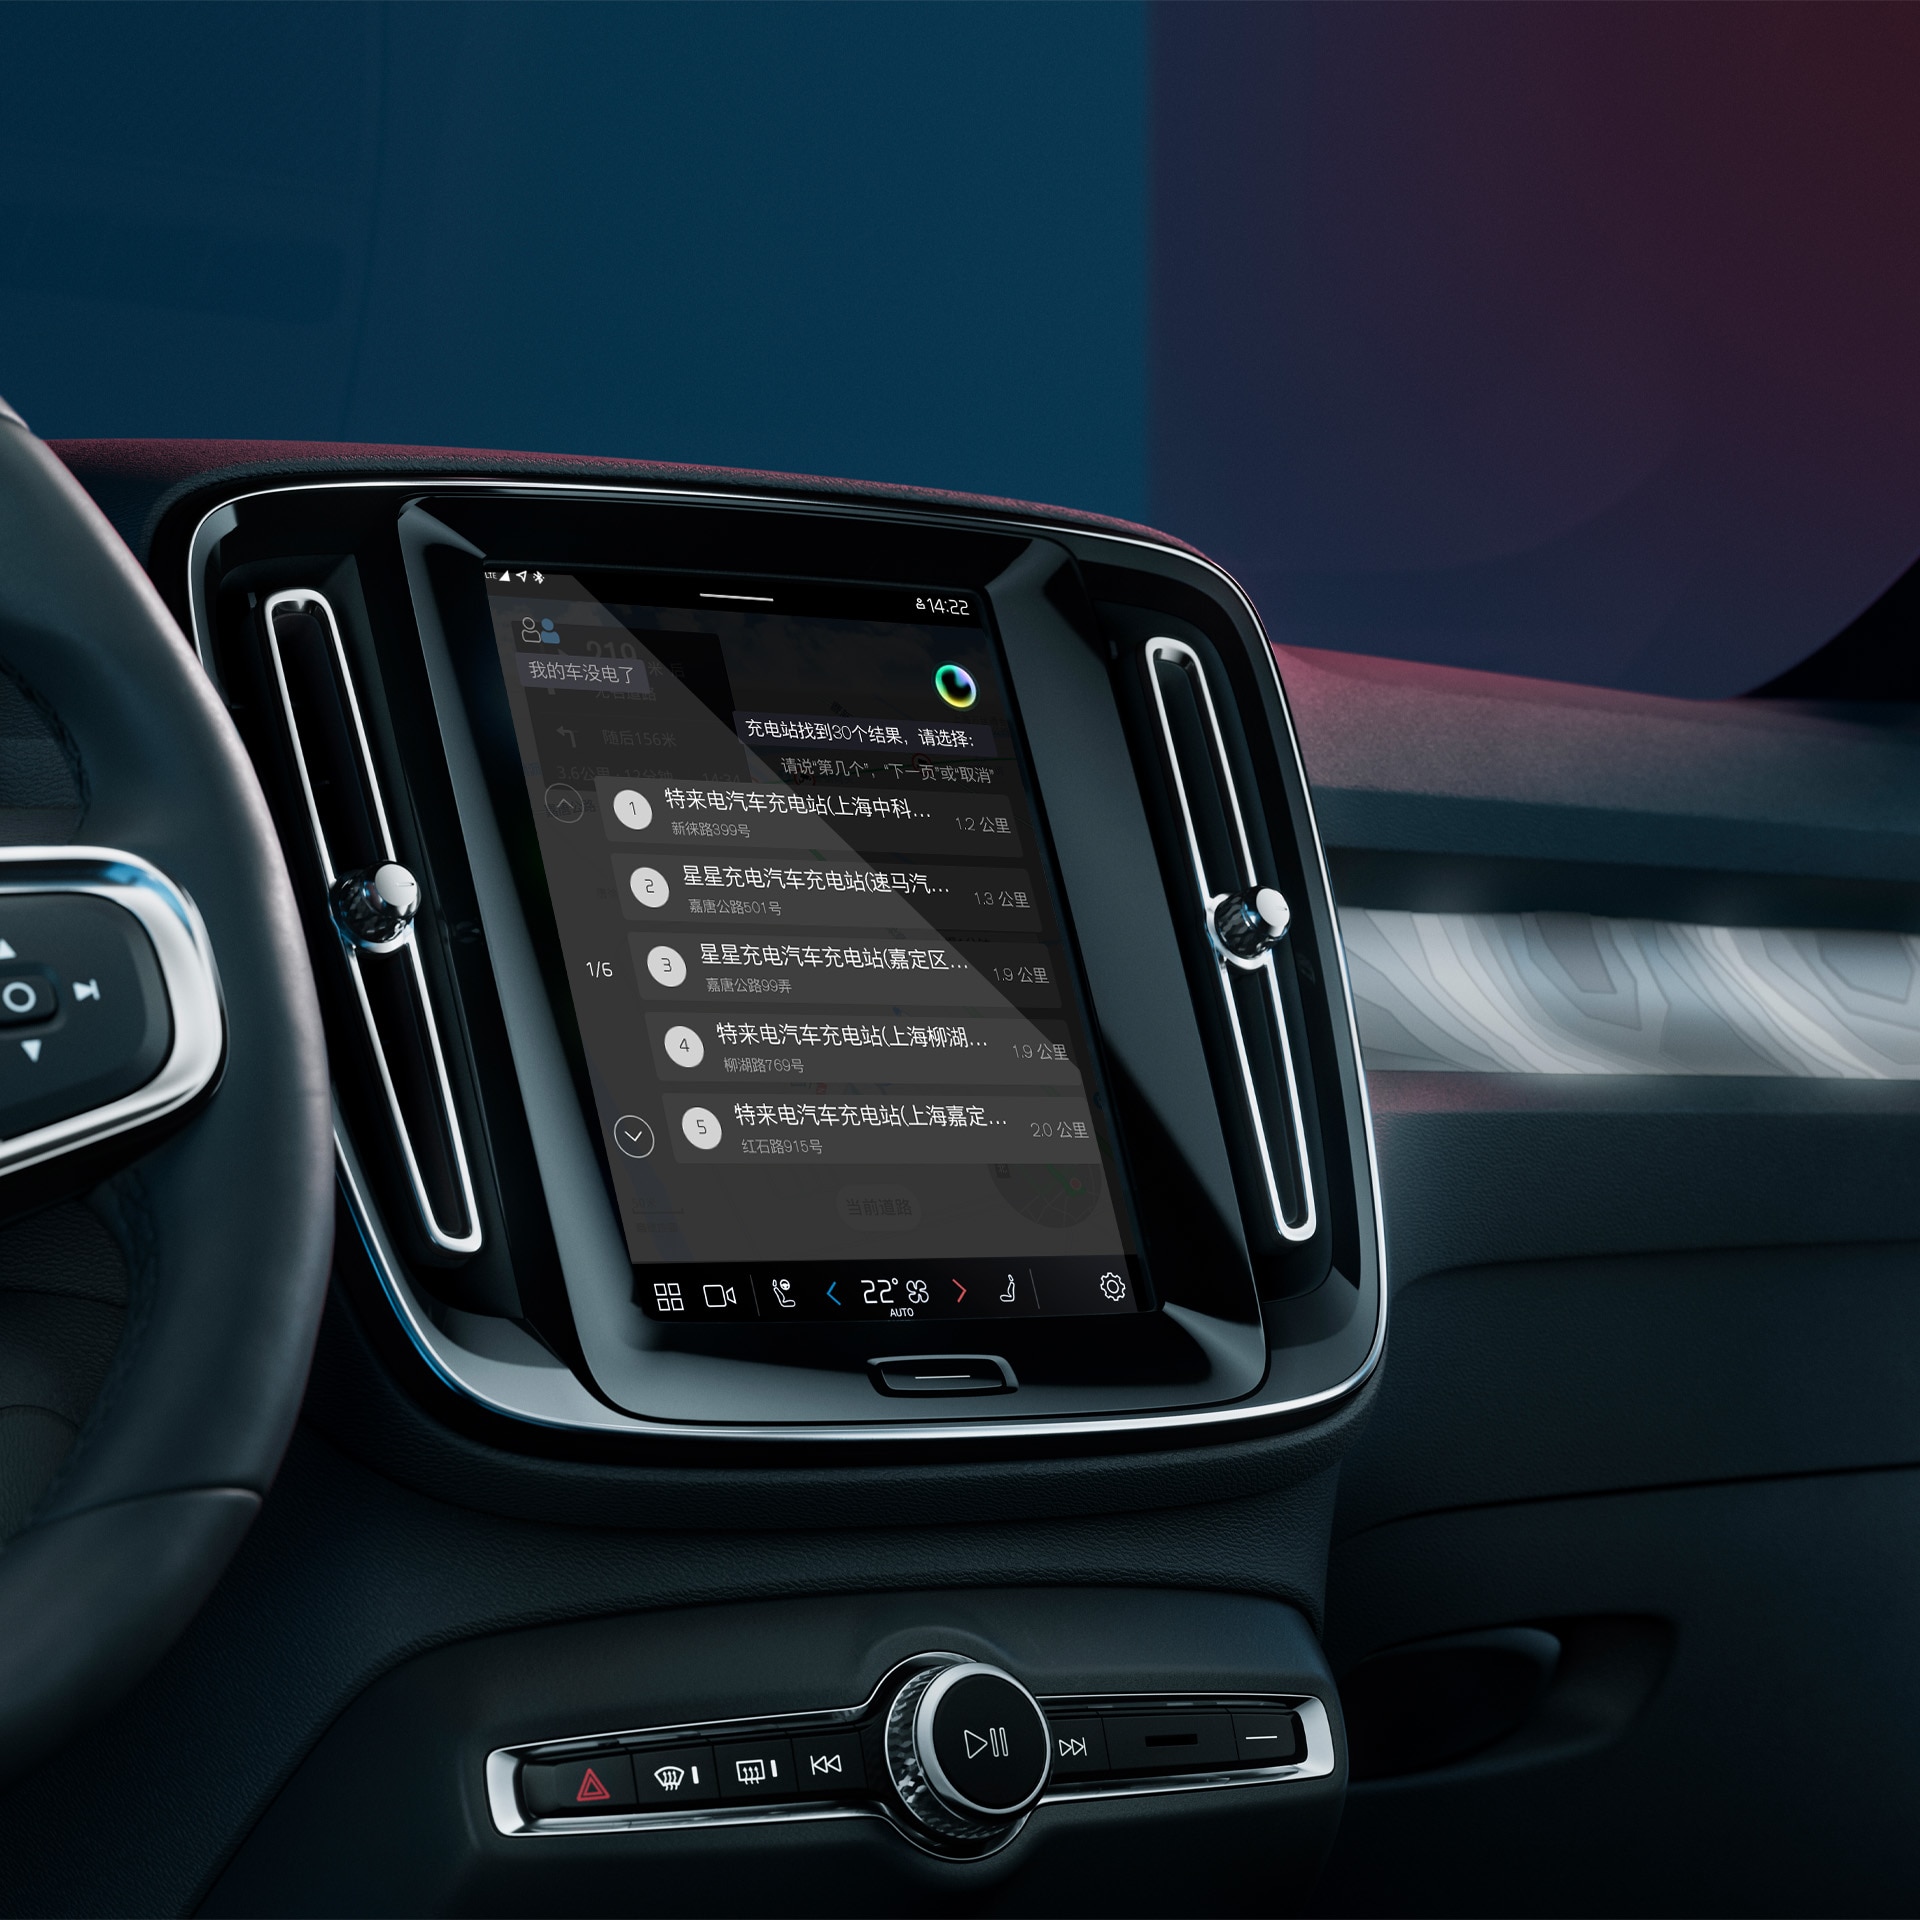 沃尔沃 S60 轿车内置 Google 助手，为您打造免提声控体验。